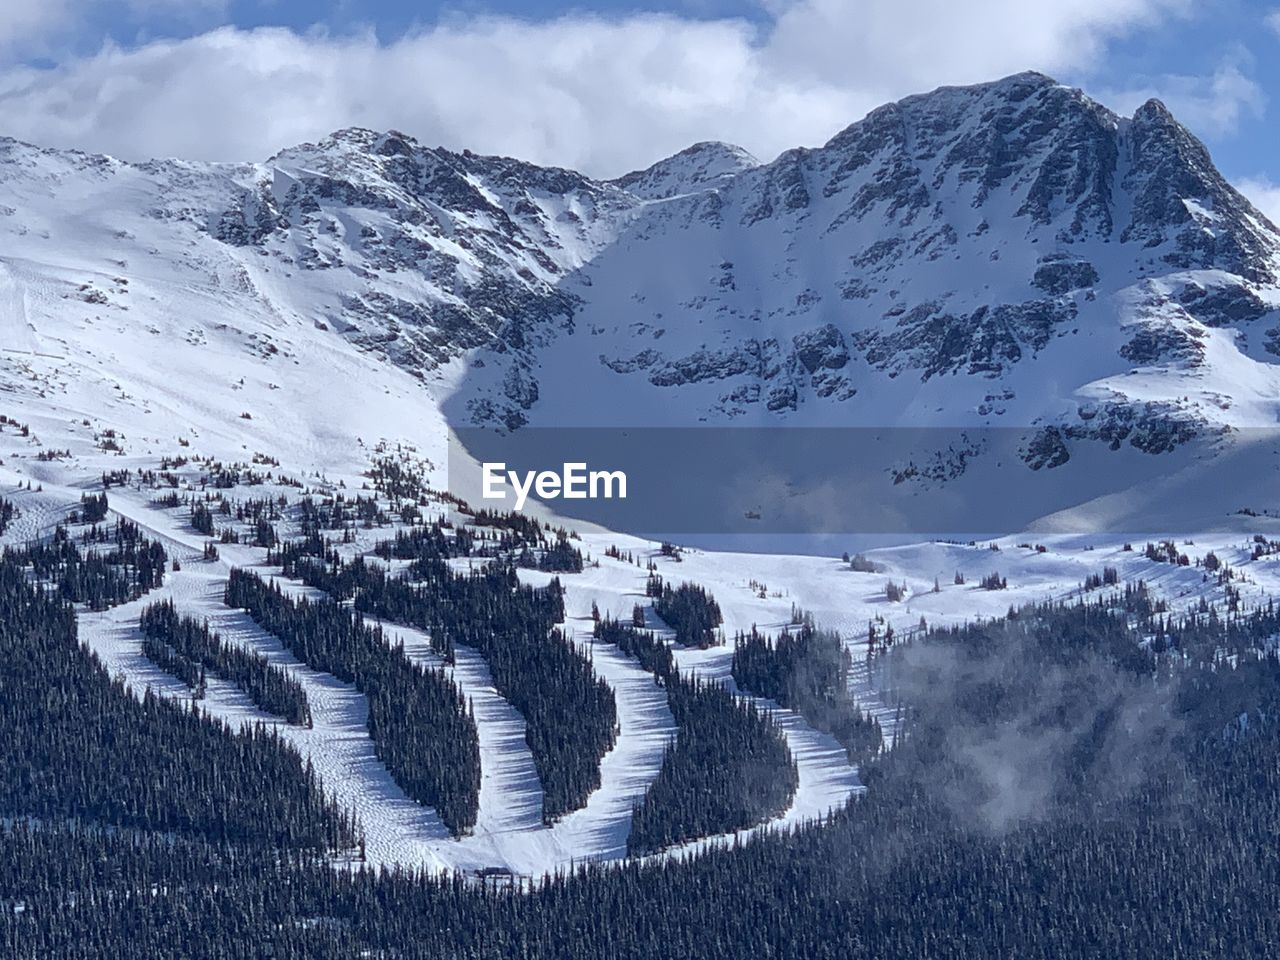 Snowcapped seven heaven mountains against sky on whistler blackcomb ski resort